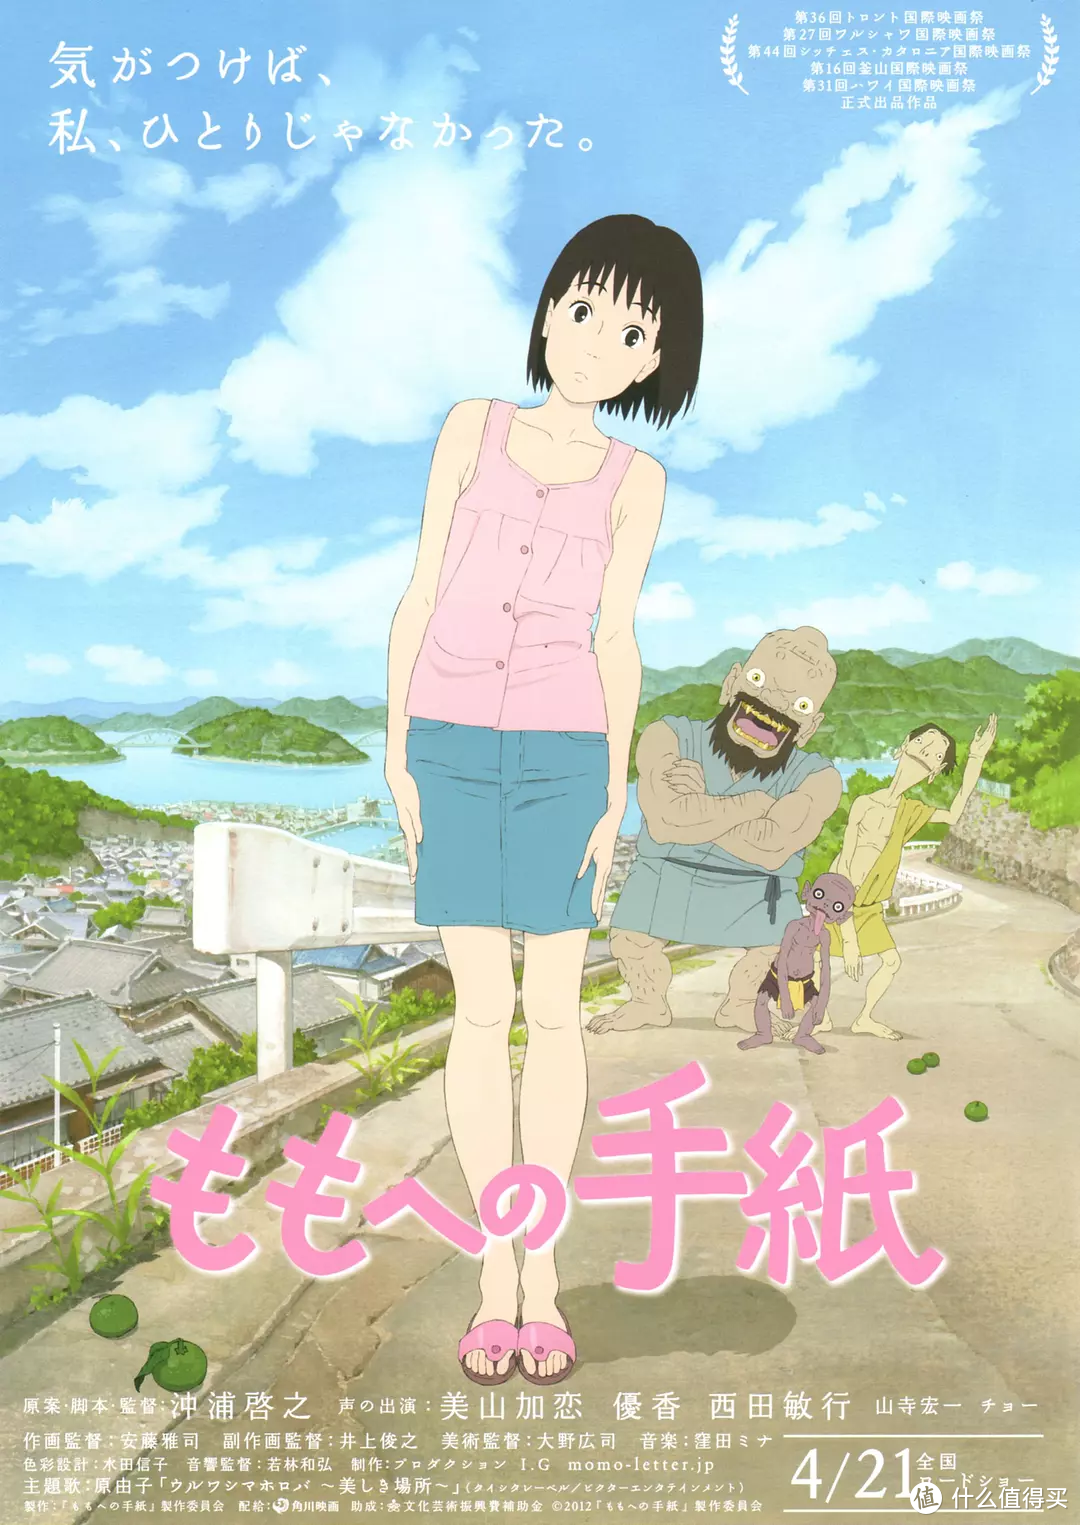 除了宫崎骏以外，你还应该知道的好看的日本动画电影—— 第二期